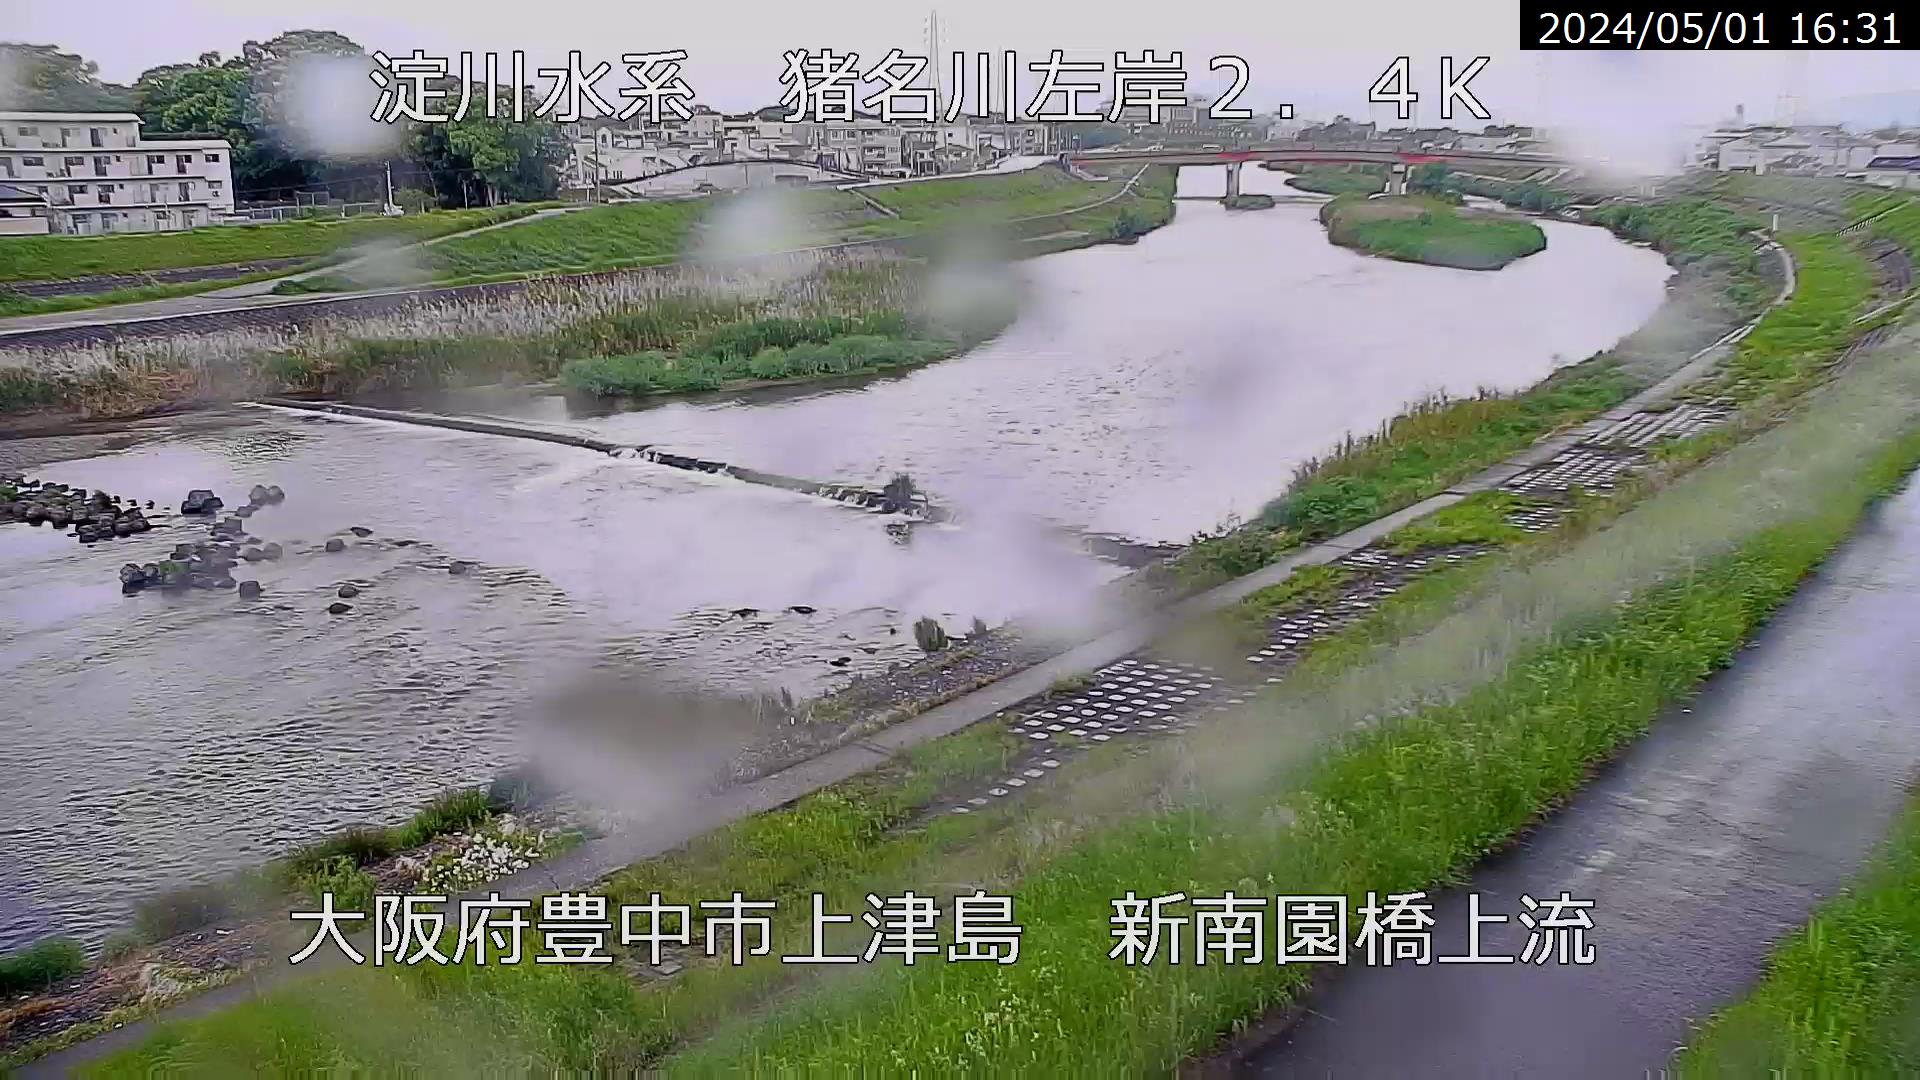 兵庫県の河川ライブカメラ｢猪名川 豊中市上津島｣のライブ画像